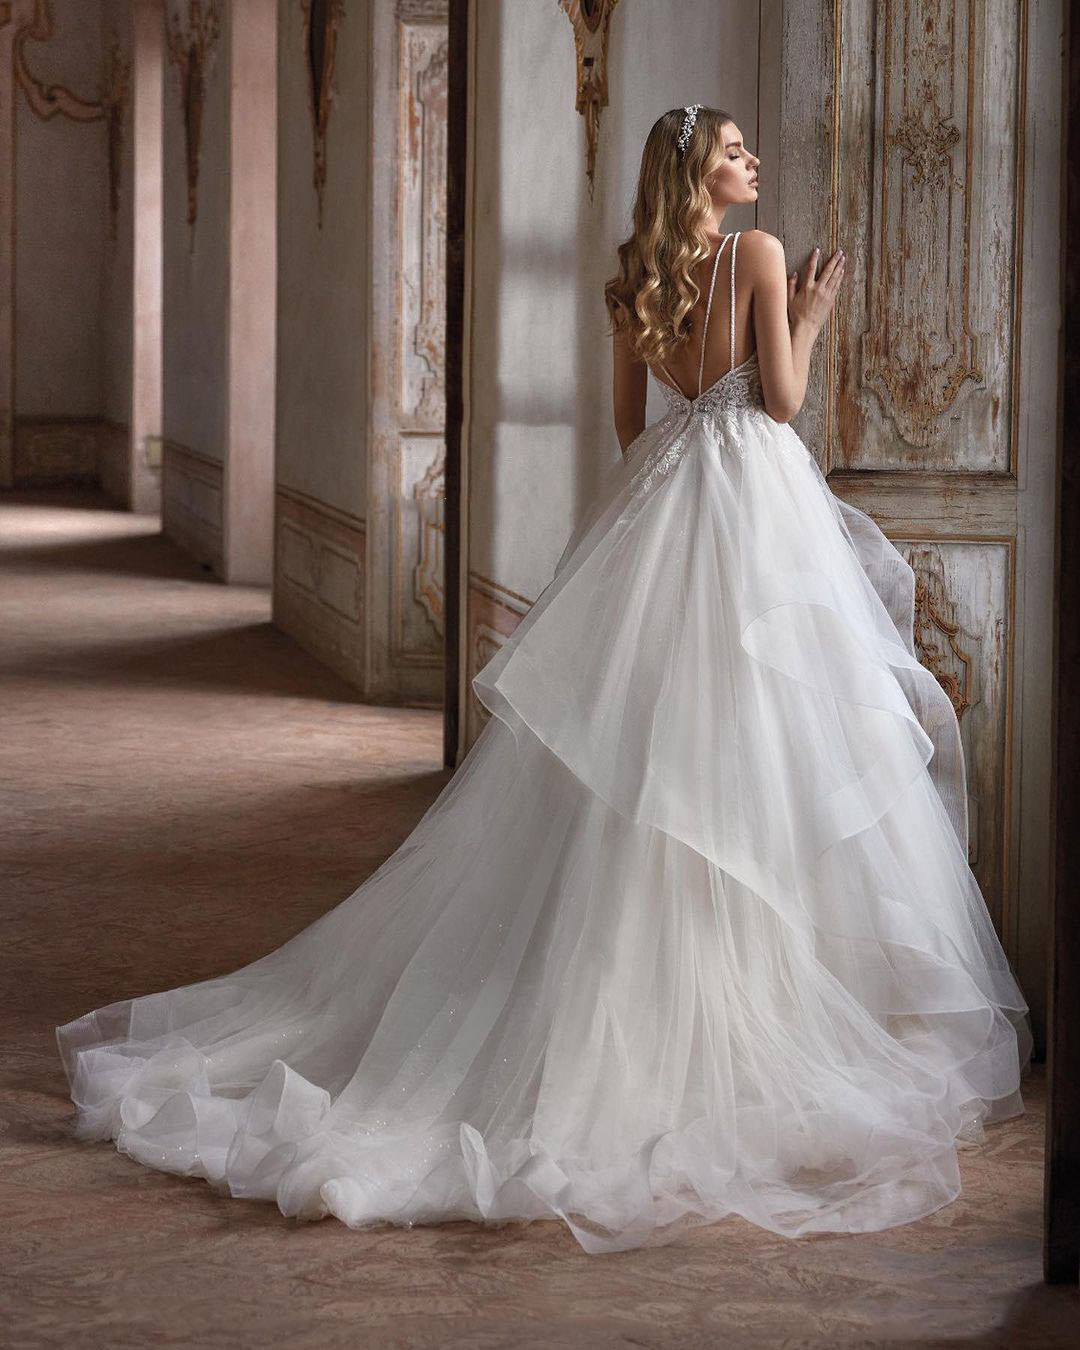 Elegante ärmellose A-Linie Brautkleider mit V-Ausschnitt, geschwollene Falte, Brautkleid mit Pailletten und Spitze, nach Maß